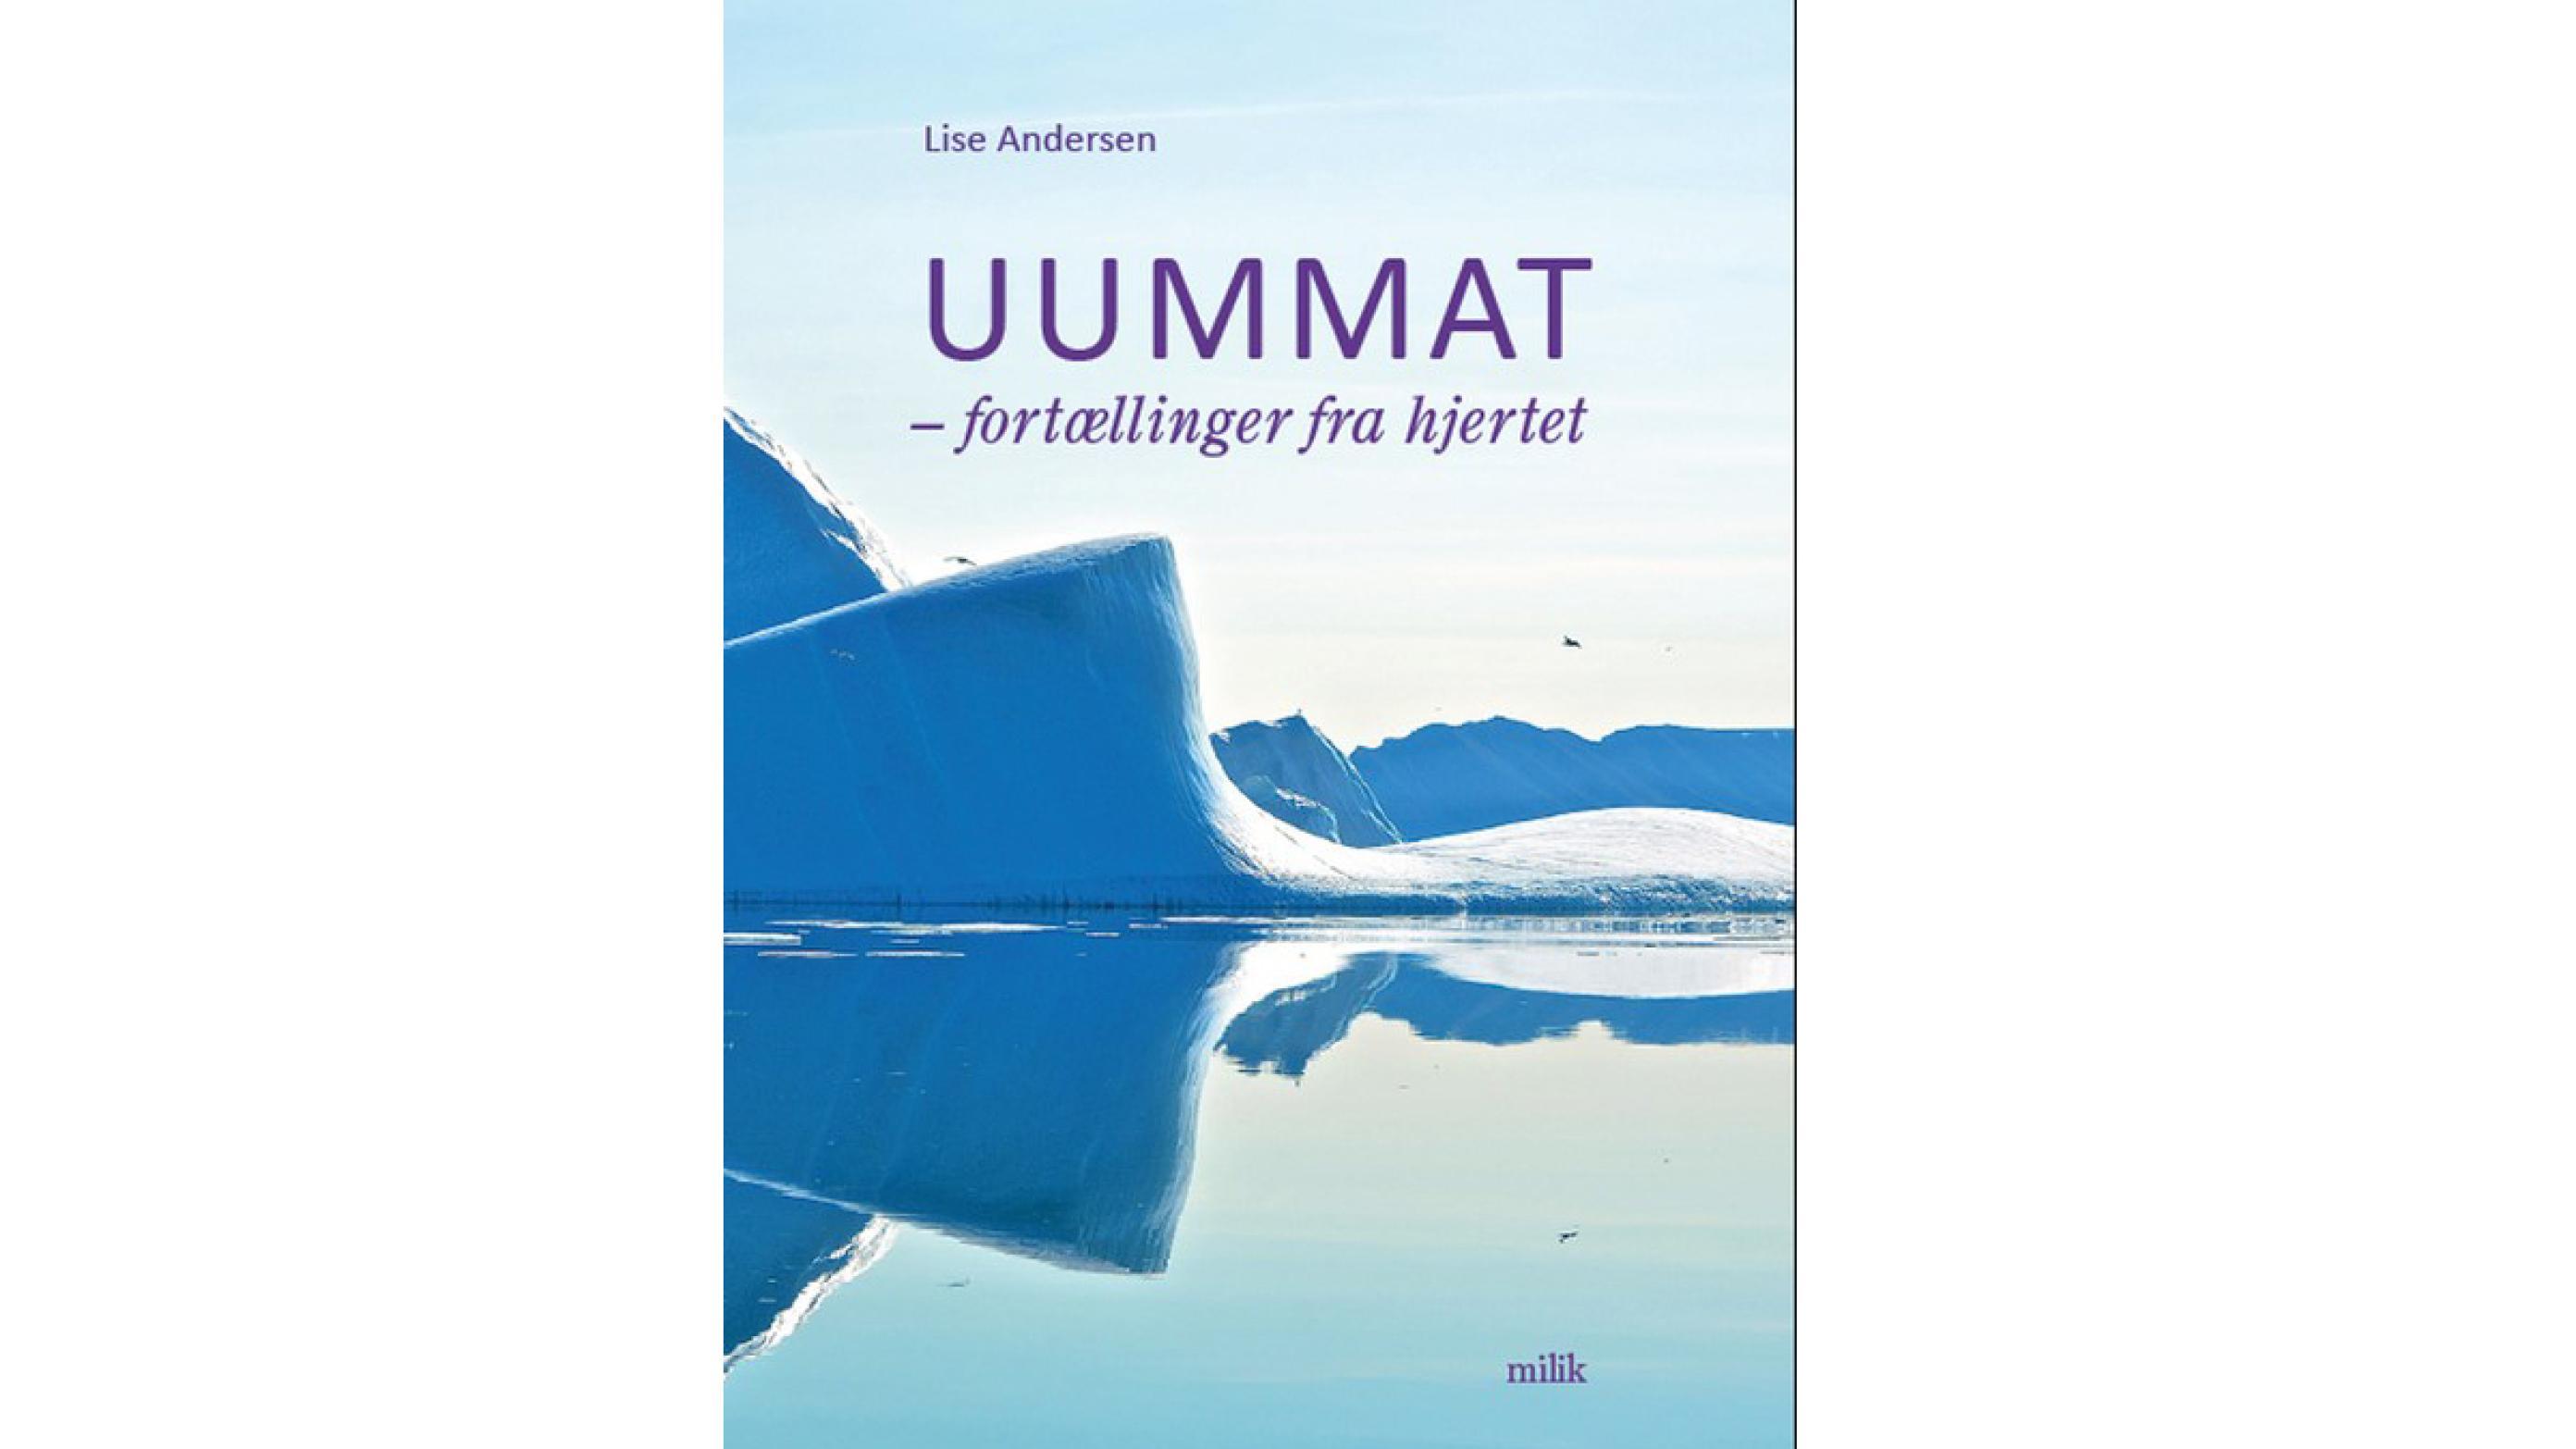 Uummat er en bog, der sympatisk og medlevende beskriver et imponerende arbejde med at bringe tidligt svigtede, forsømte, misbrugte børn og unge tilbage til et liv med mening og selvstændighed. Foto: Milik